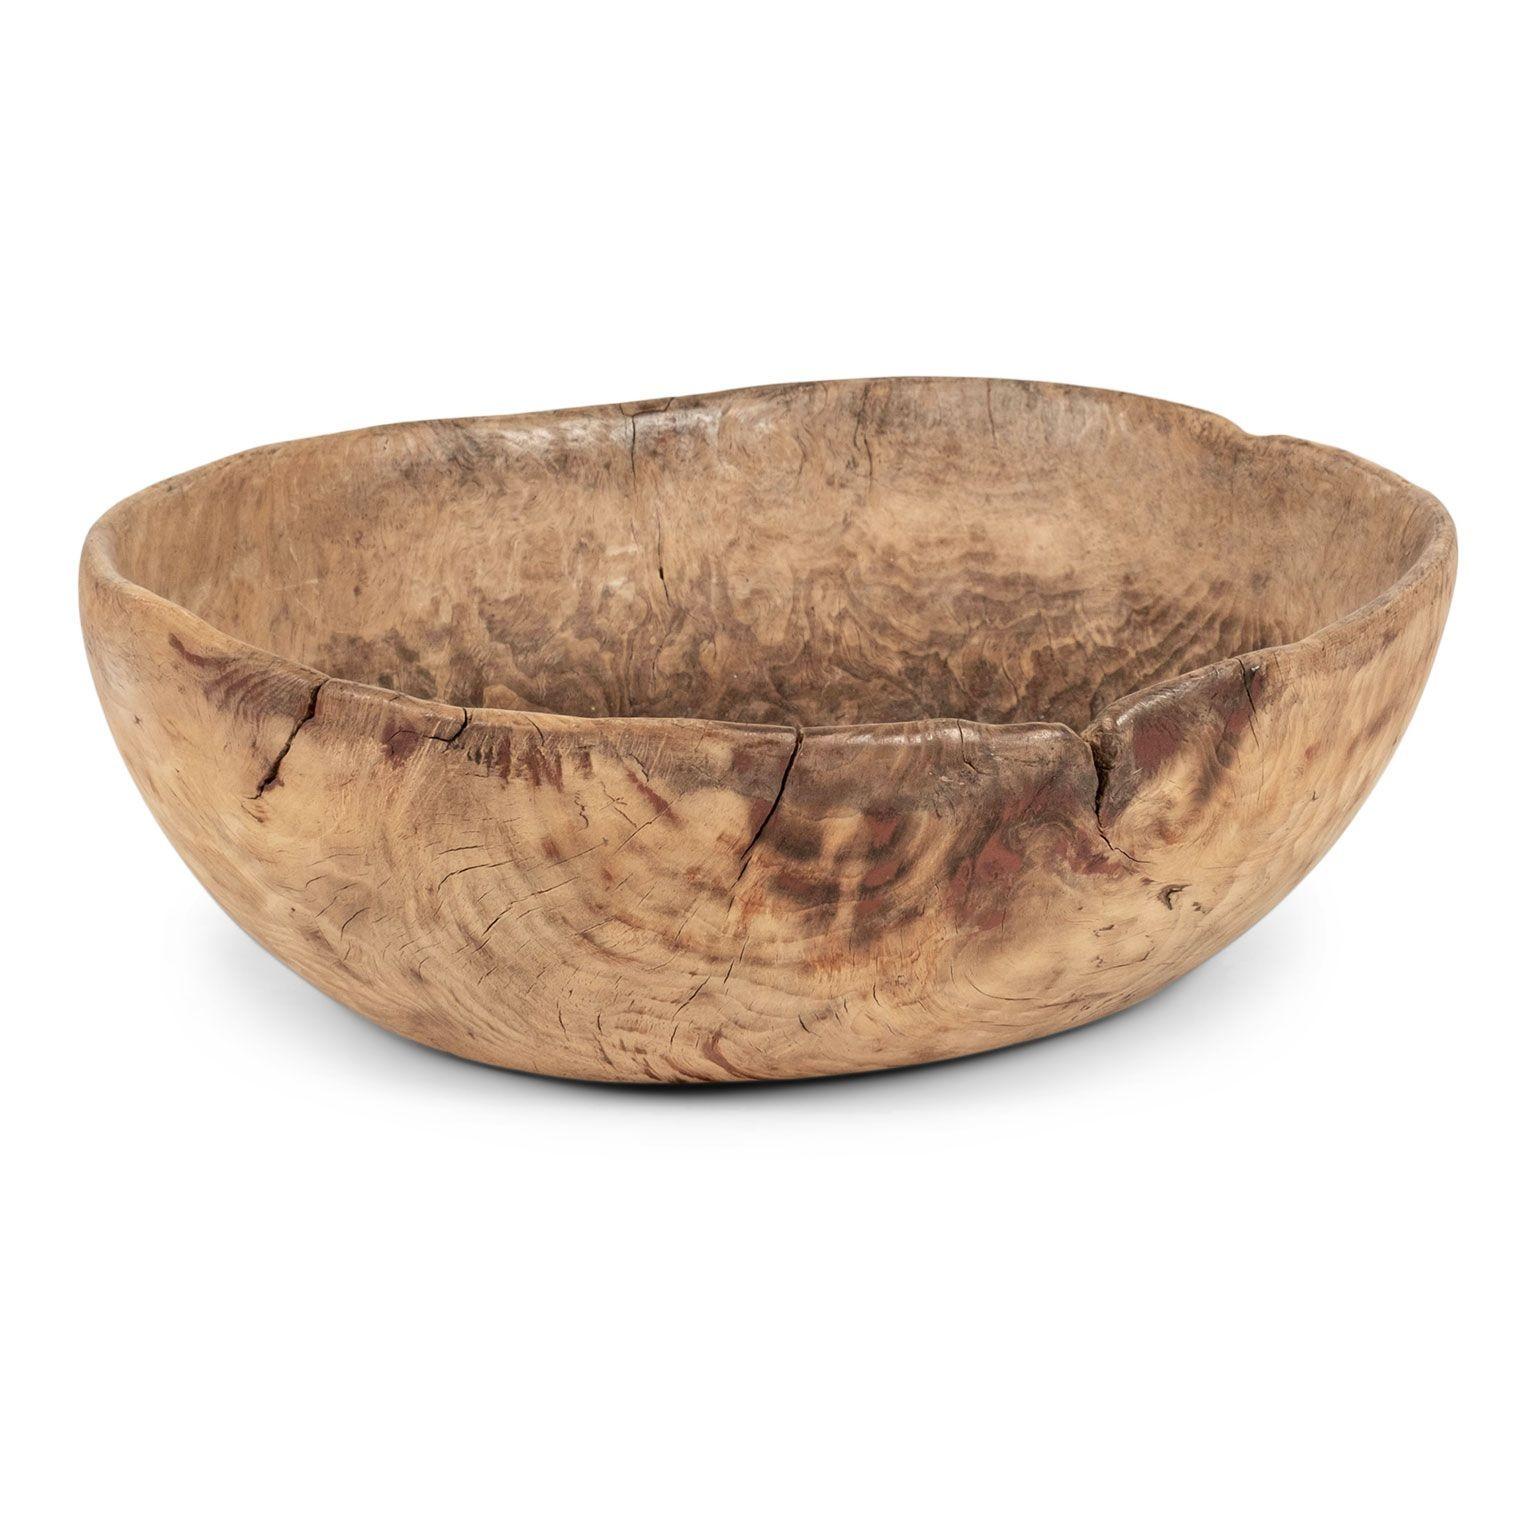 primitive wooden bowl